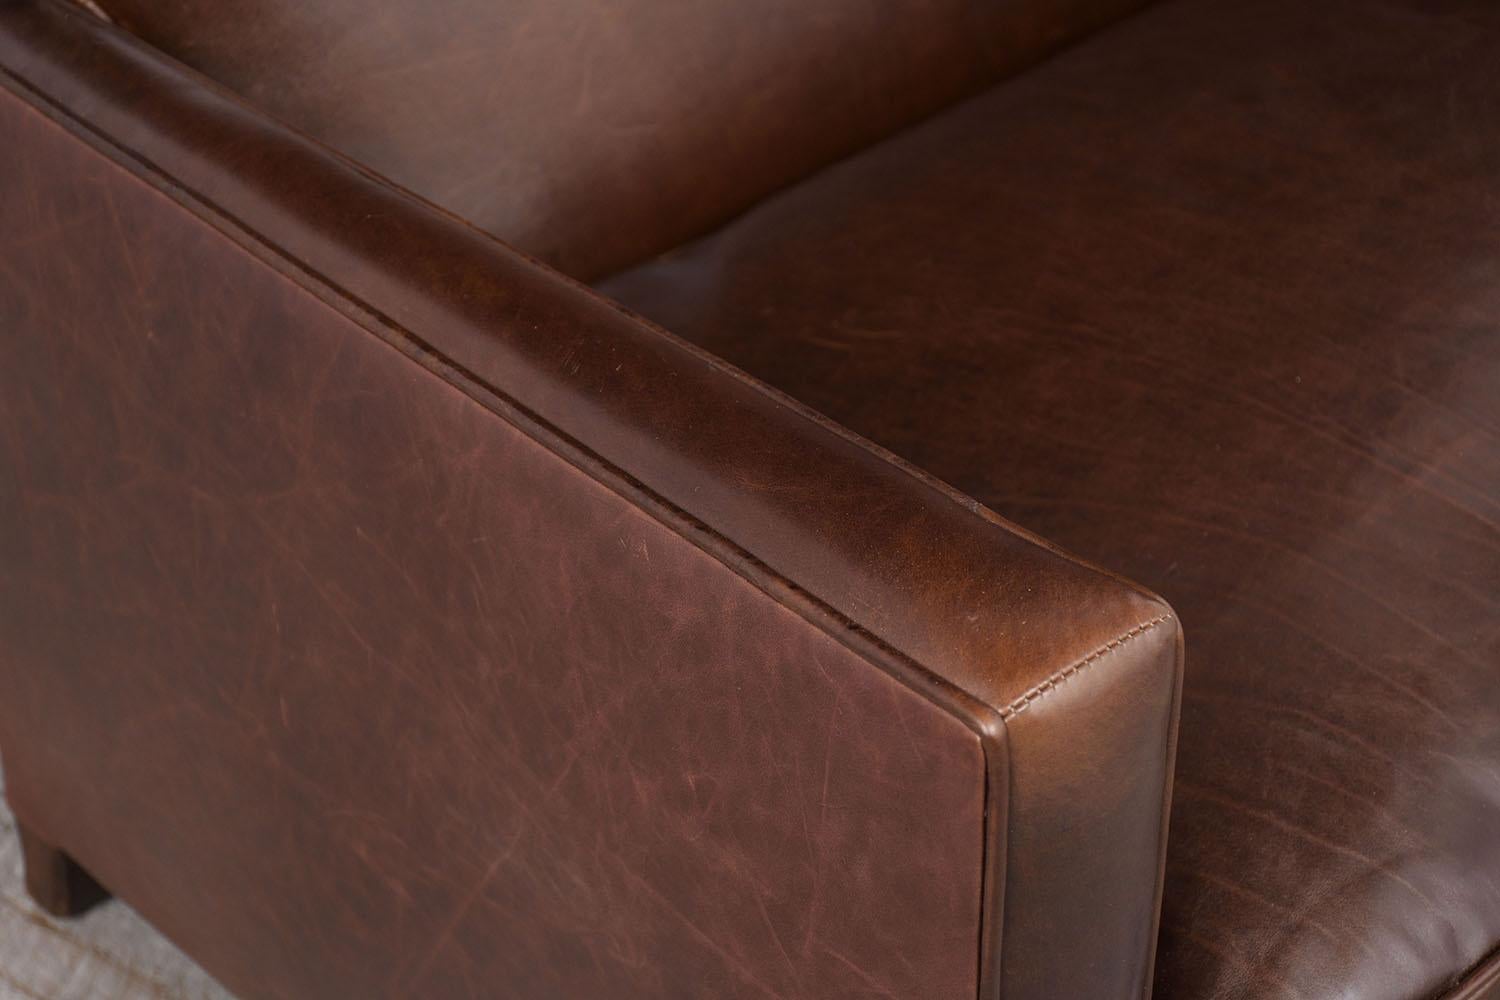 art deco leather sofas